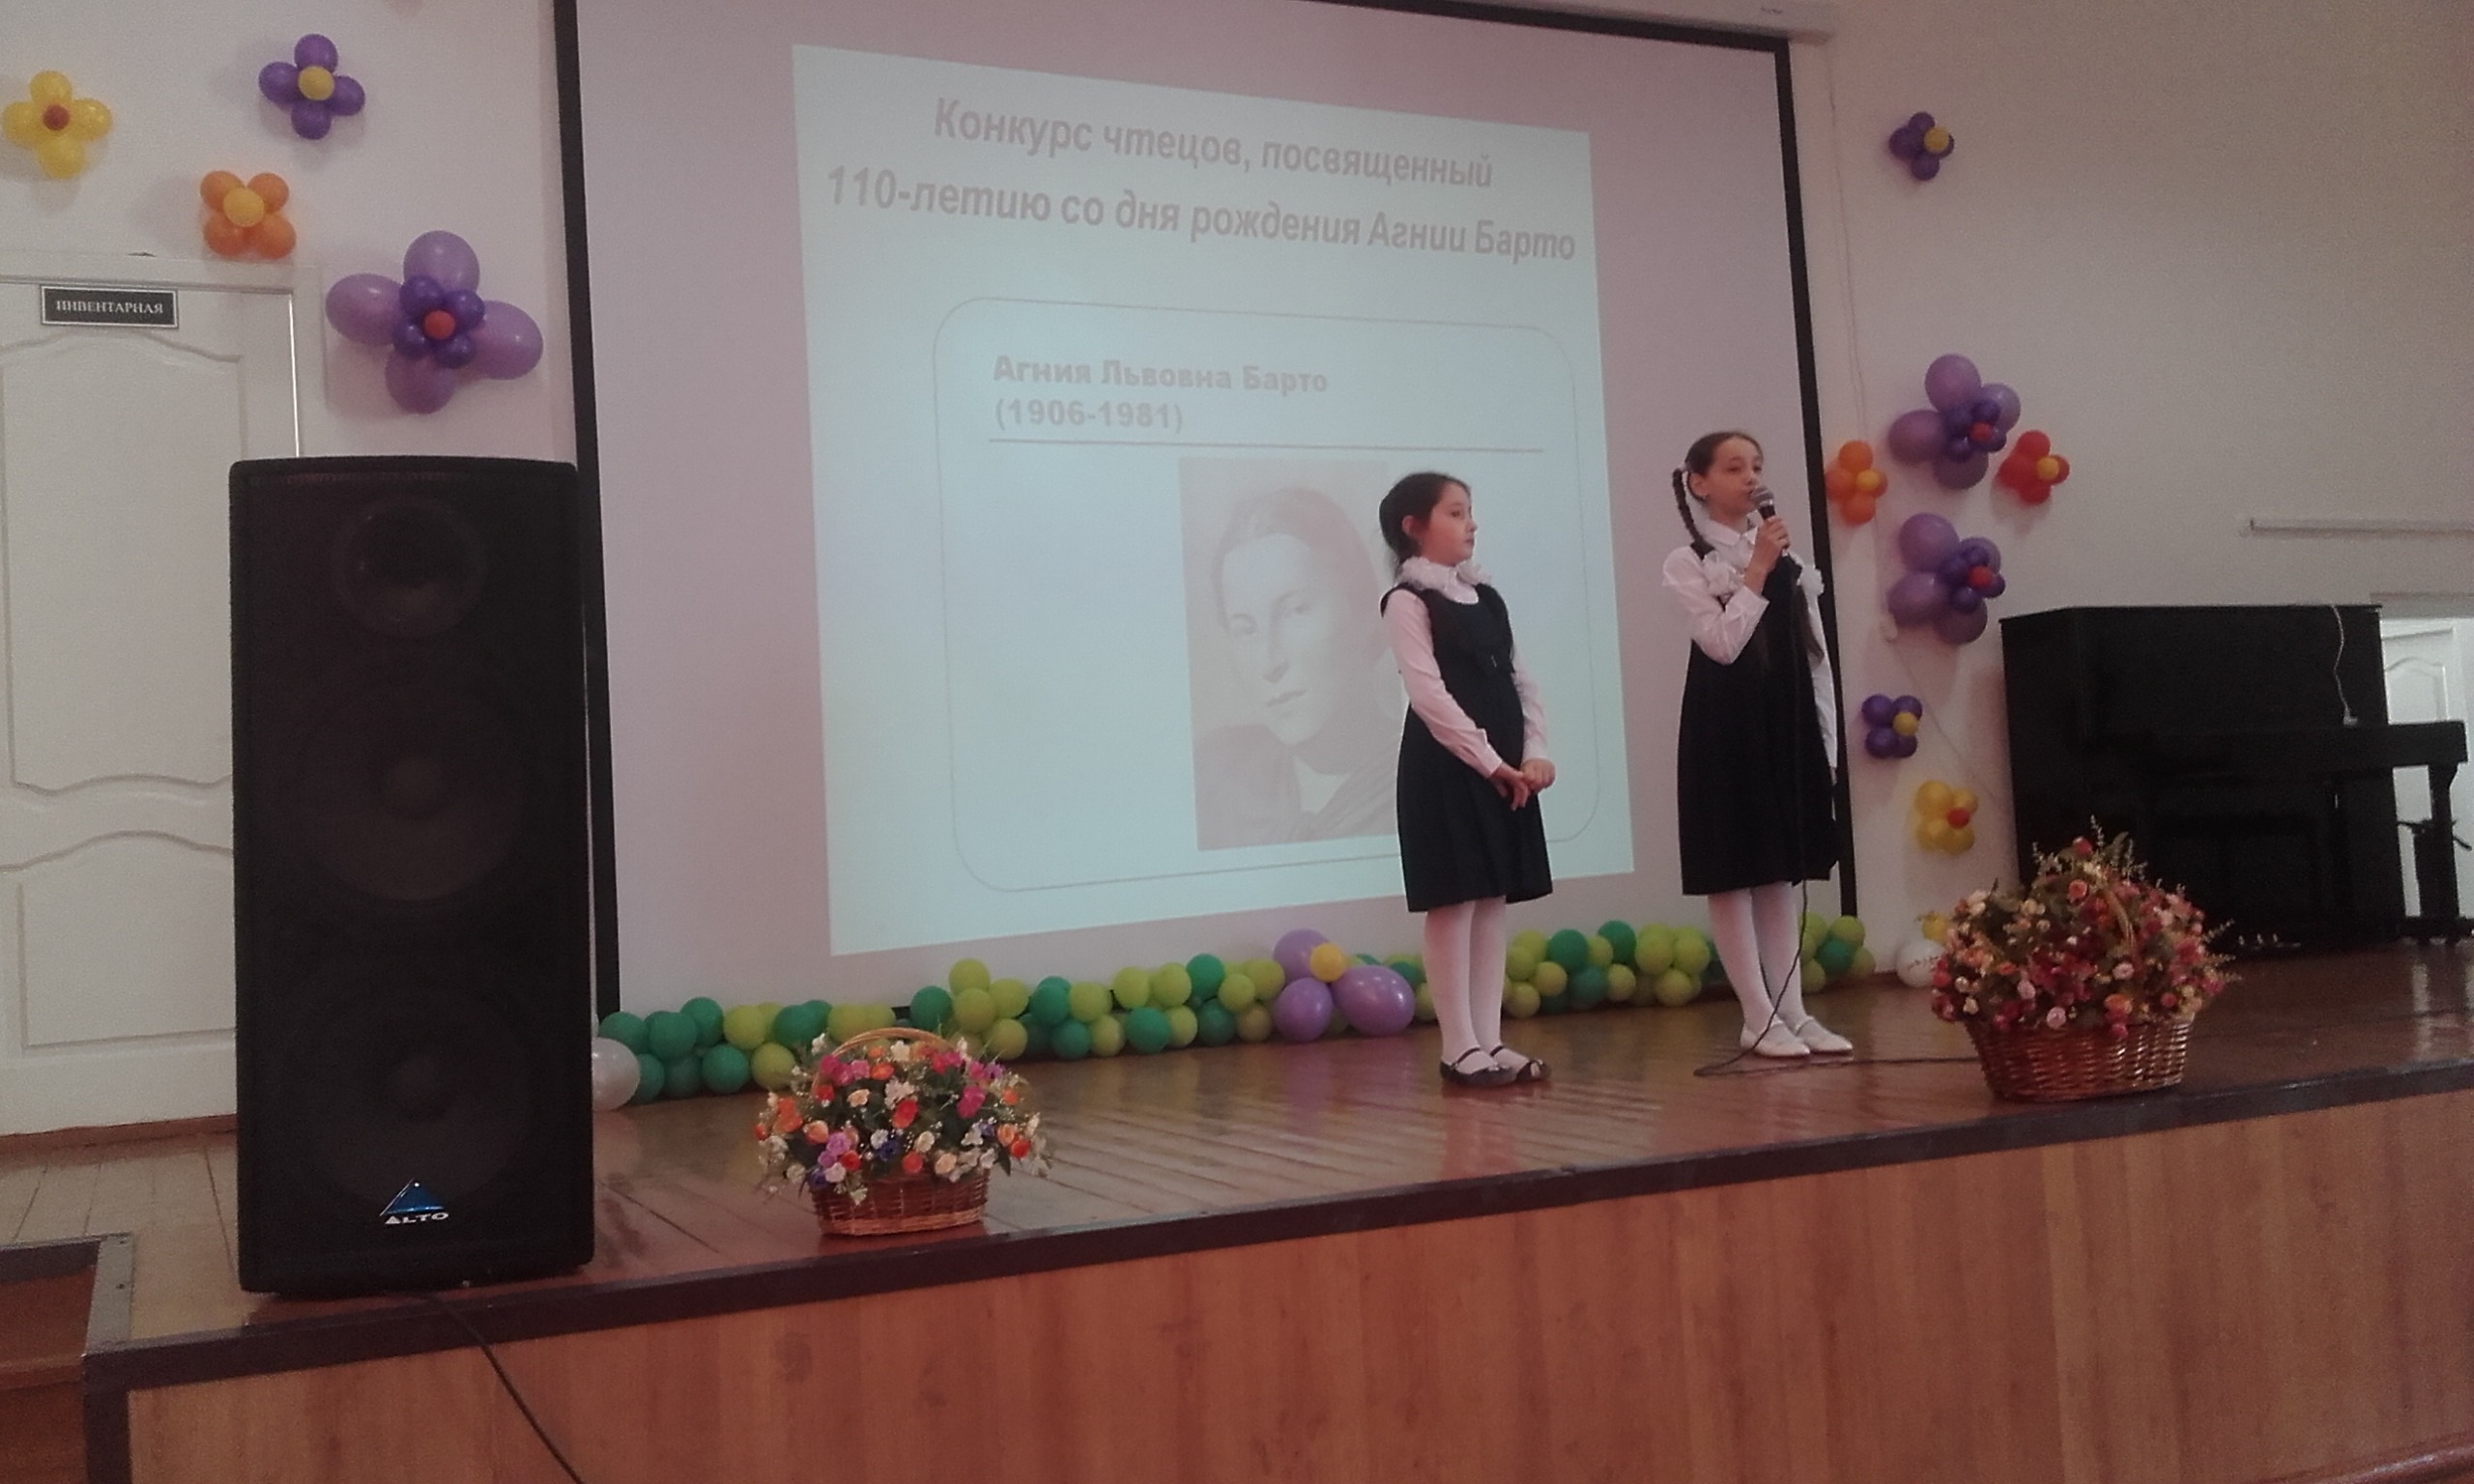 Конкурс чтецов среди младших школьников, посвященный 110-летию со дня рождения Агнии Барто